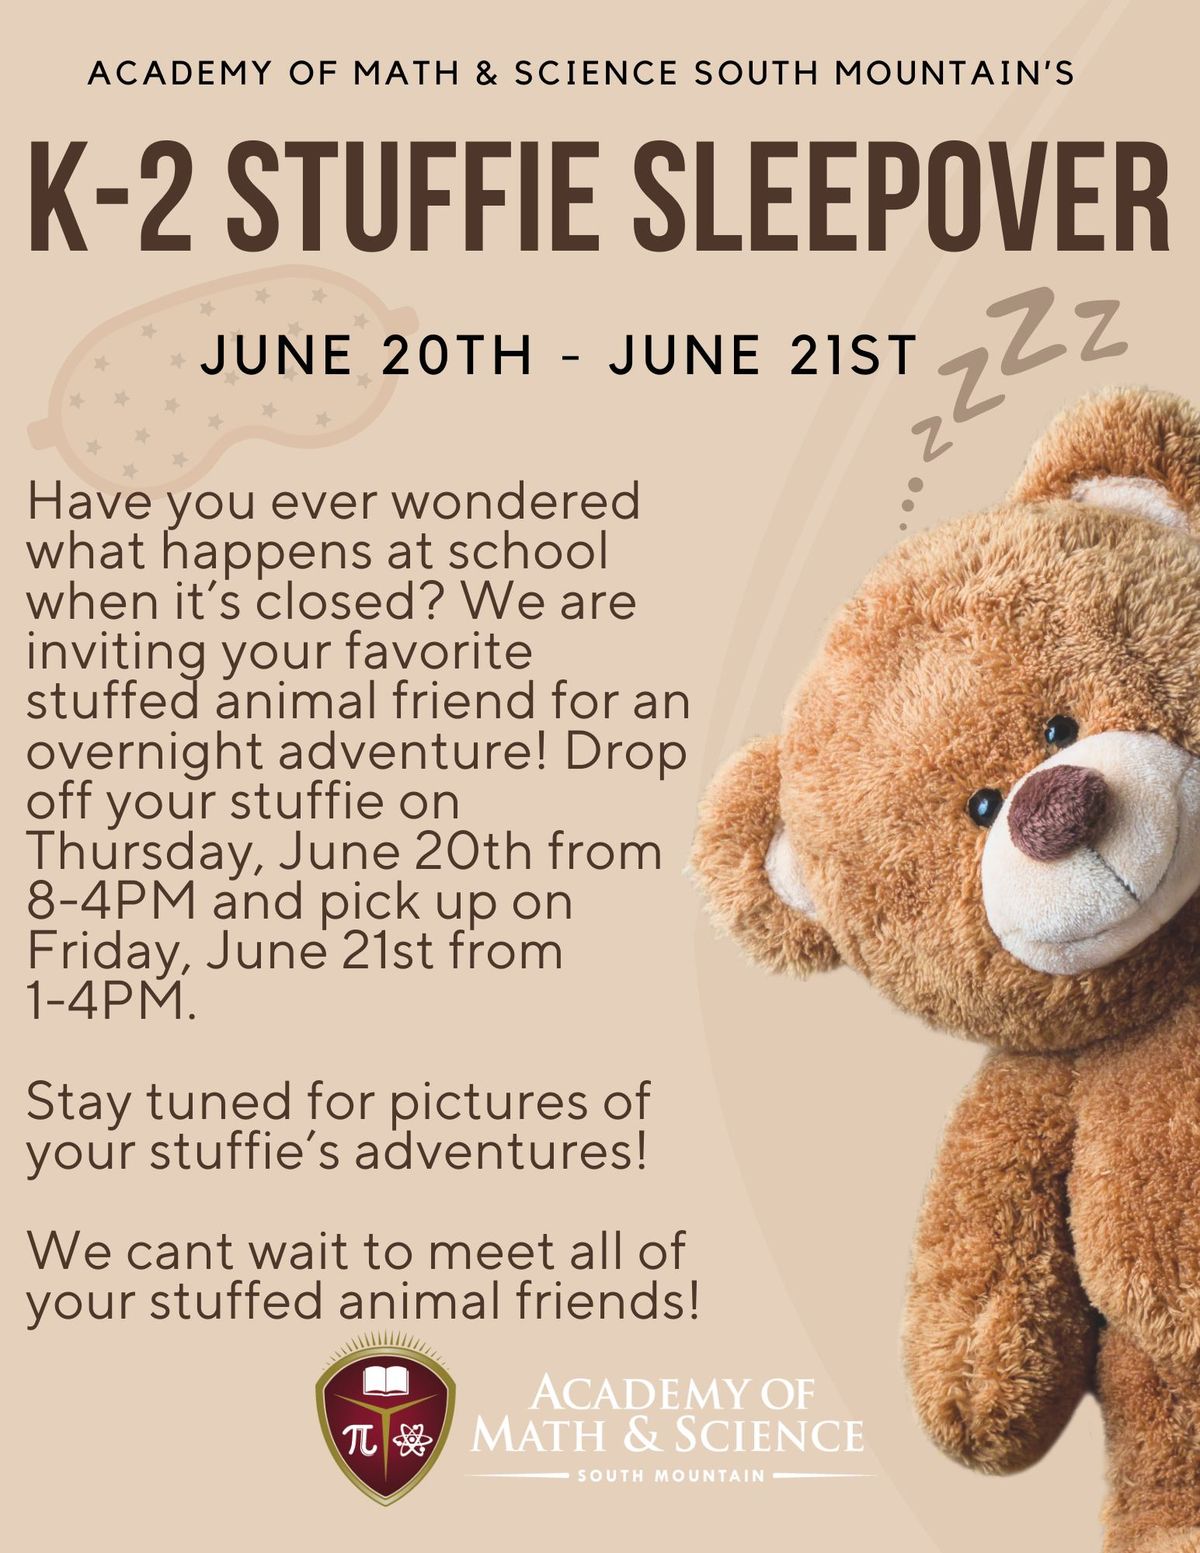 K-2 Stuffie Sleepover